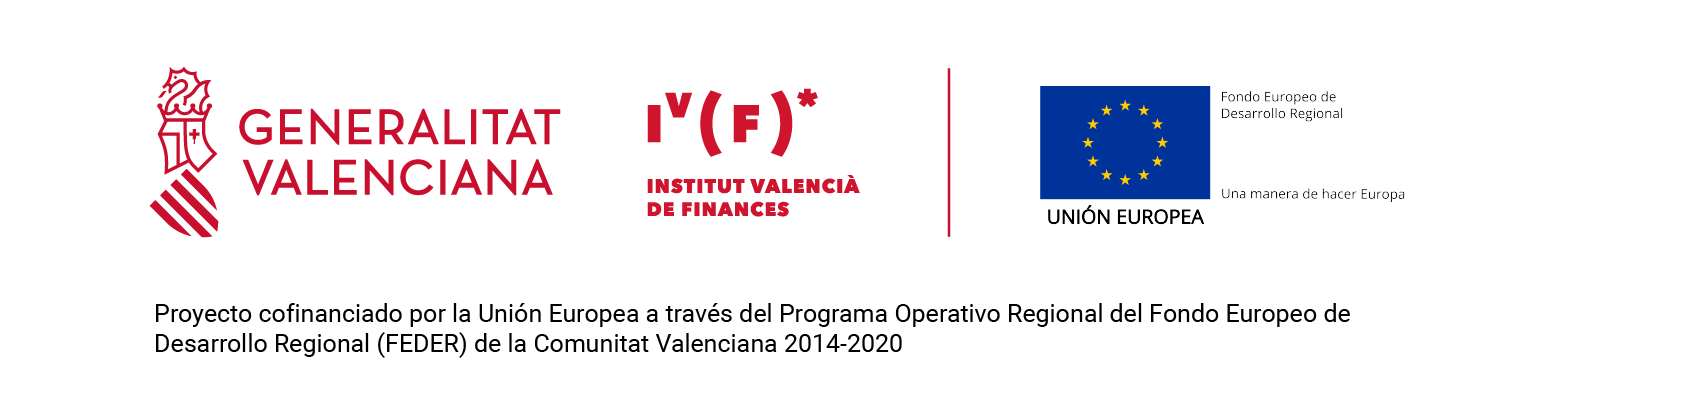 generalitat valenciana ivg ue logotipo confinanciacion